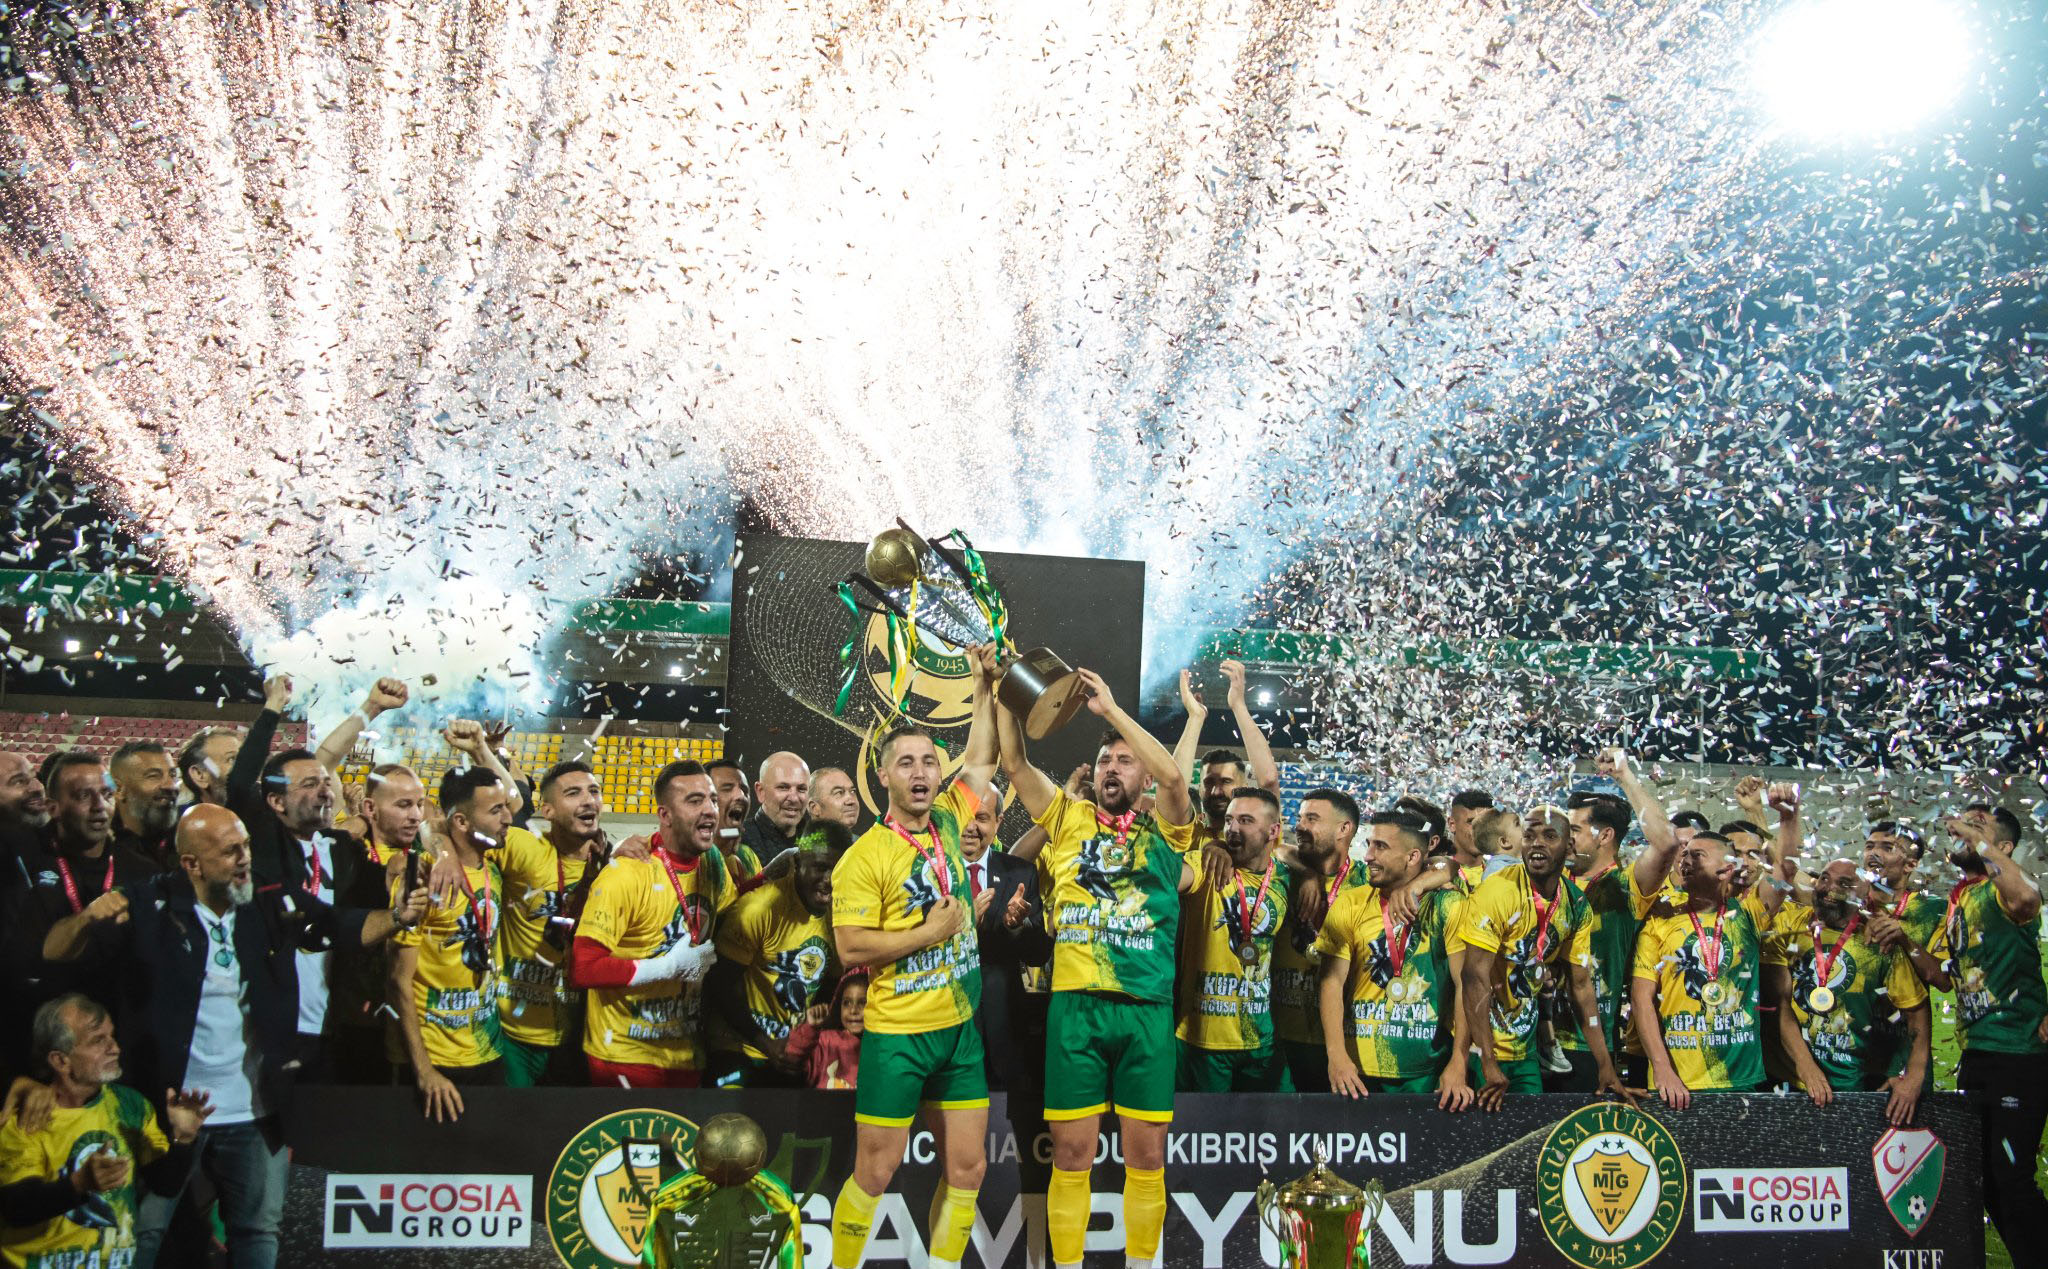 Nicosia Group Kıbrıs Kupası'nda şampiyon Mağusa Türk Gücü